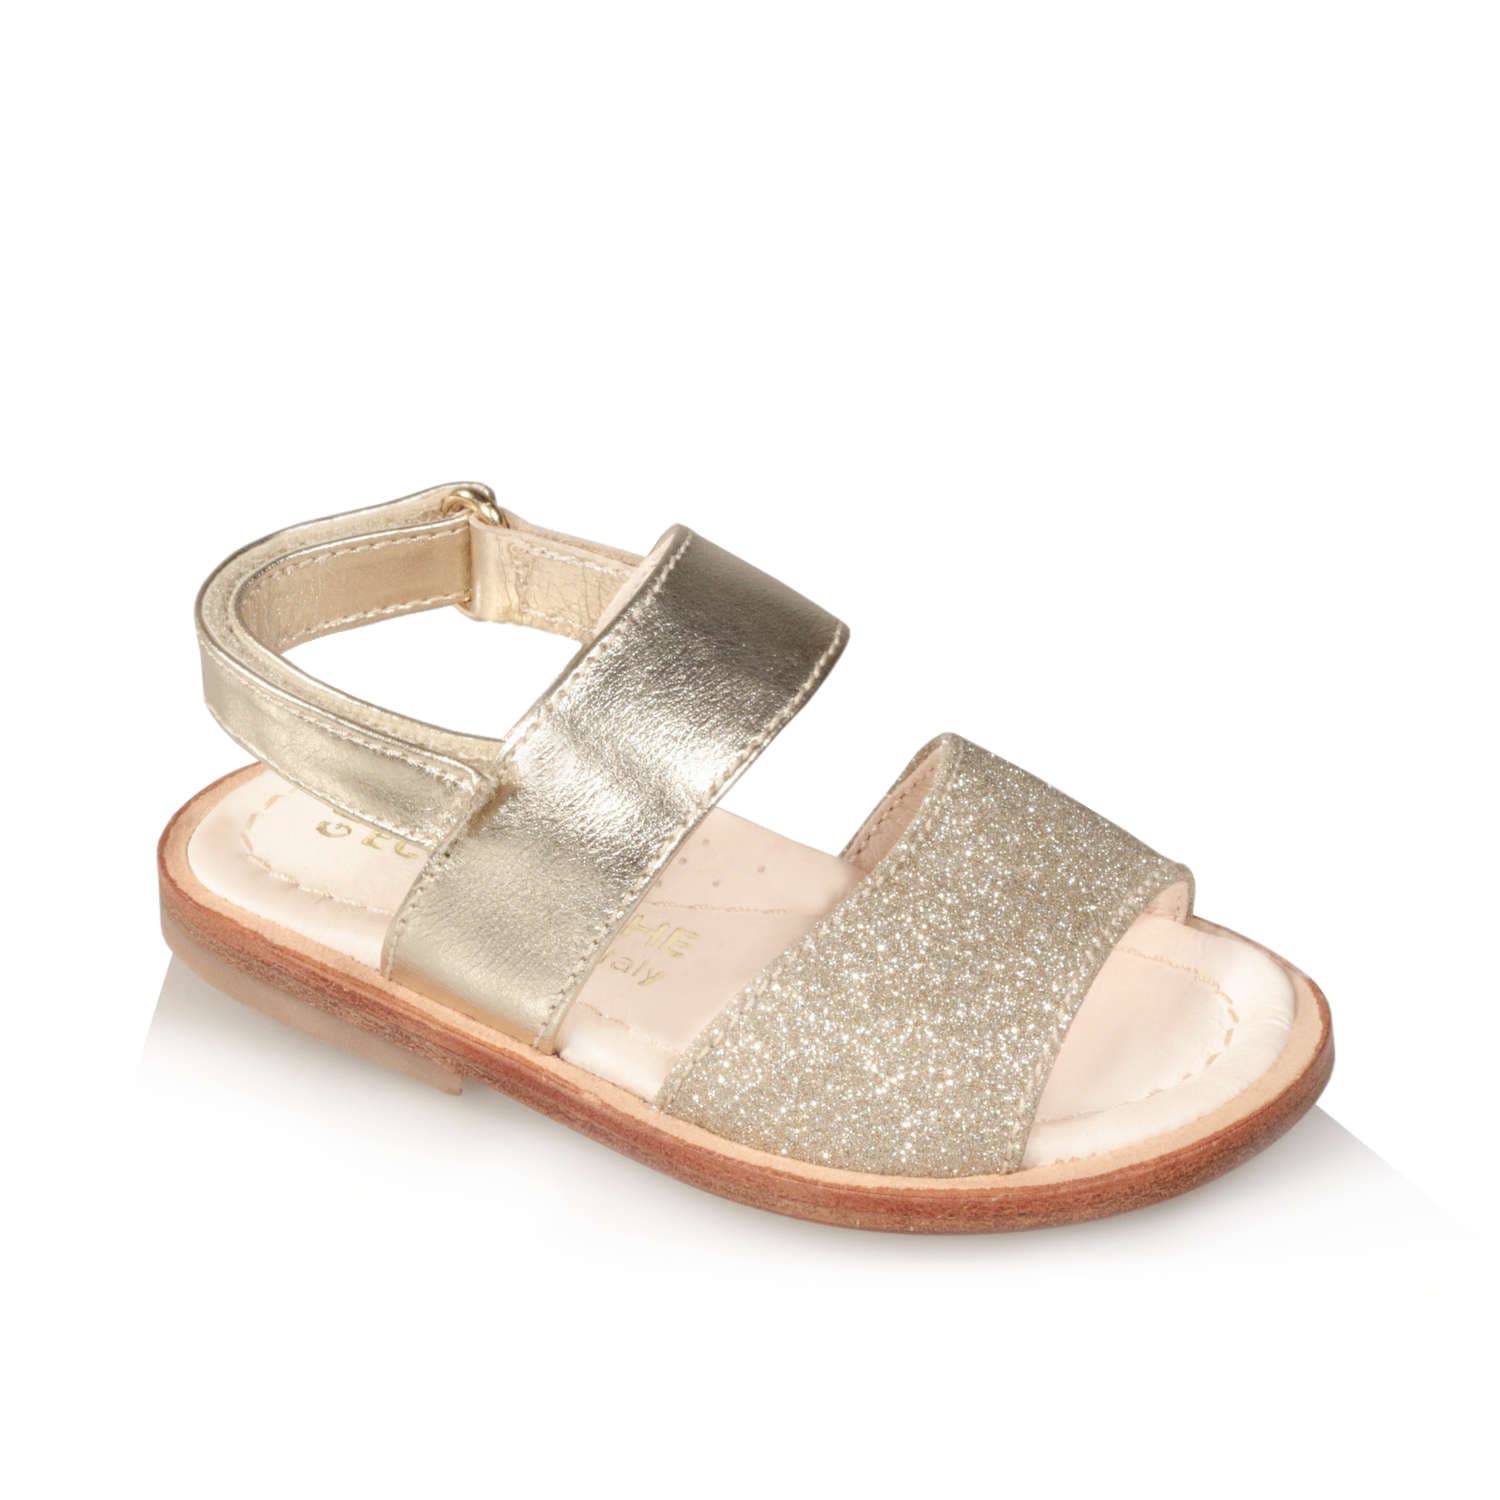 Sandalo oro da bambina artigianale e Made in Italy - Gioiecologiche